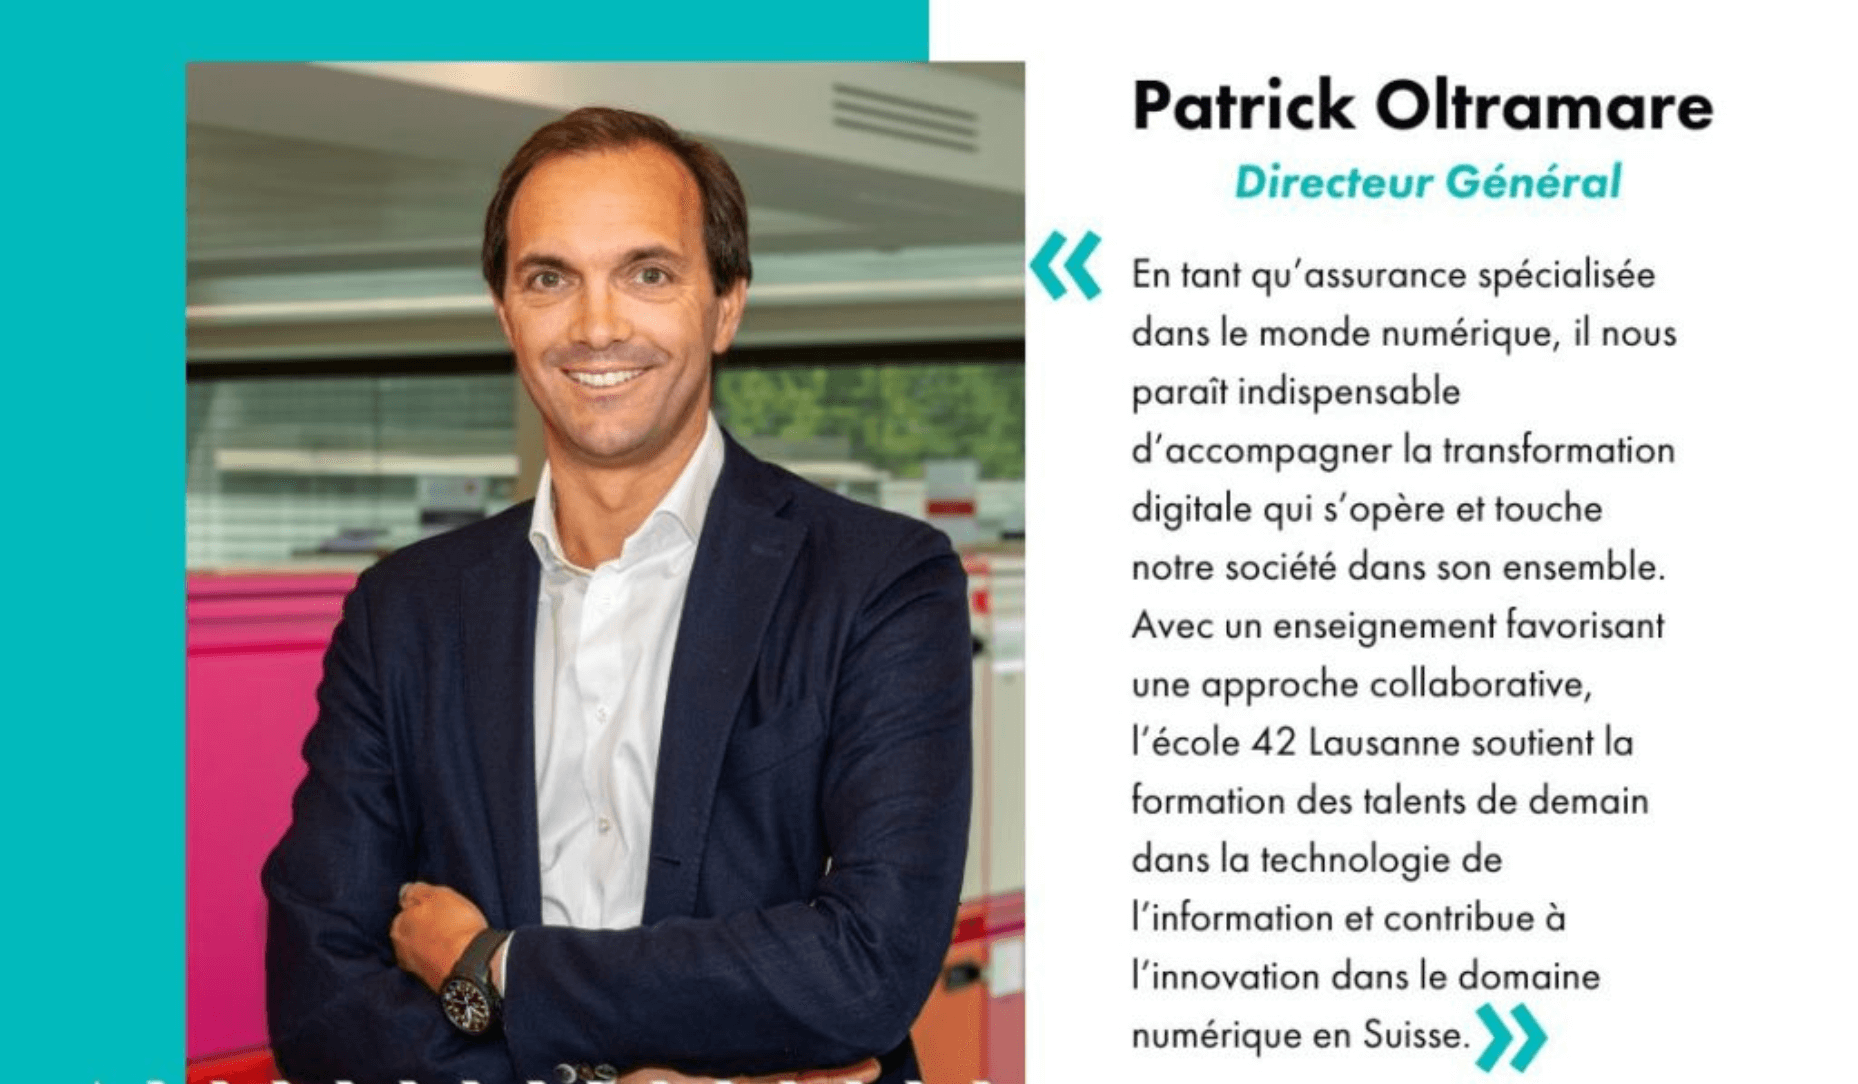 Patrick Oltramare s'exprime au sujet de son nouveau partenariat avec 42 Lausanne